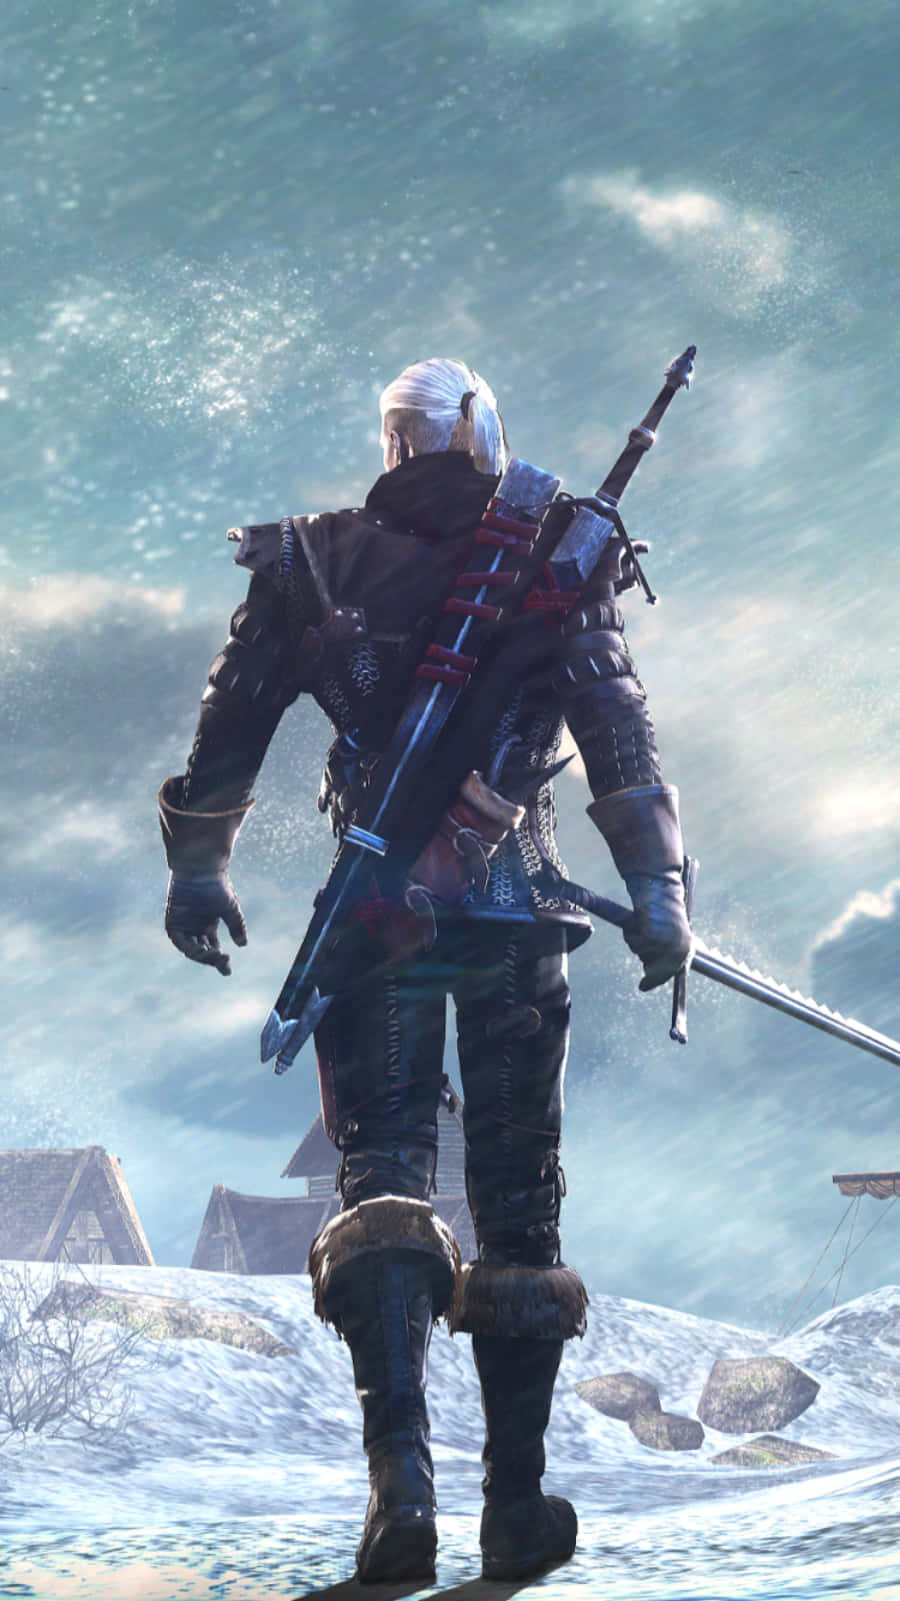 Schneespazierender Geralt Witcher 3 Handy Wallpaper